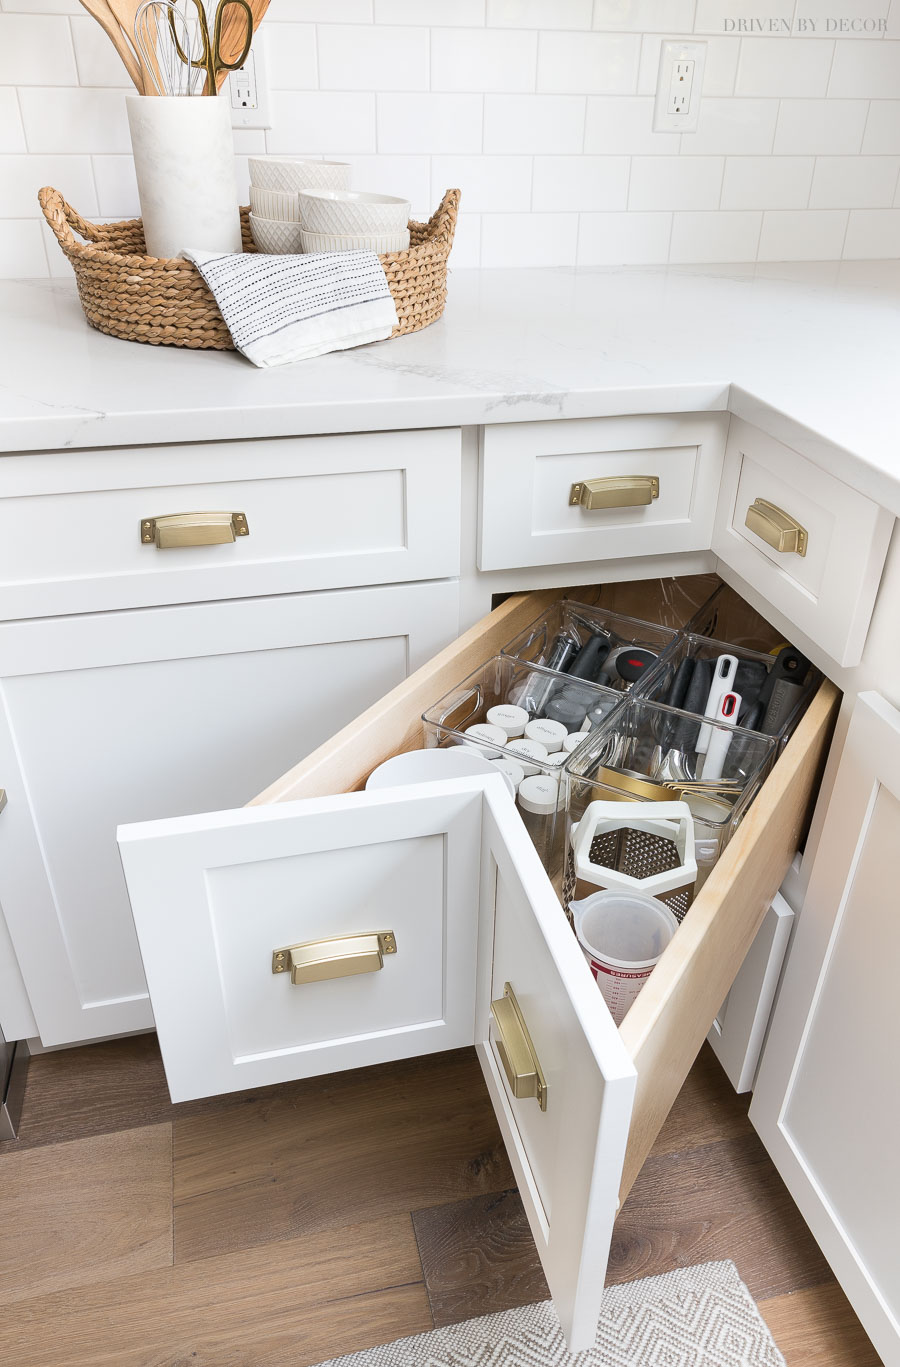 Kitchen Storage Ideas Driven by Decor